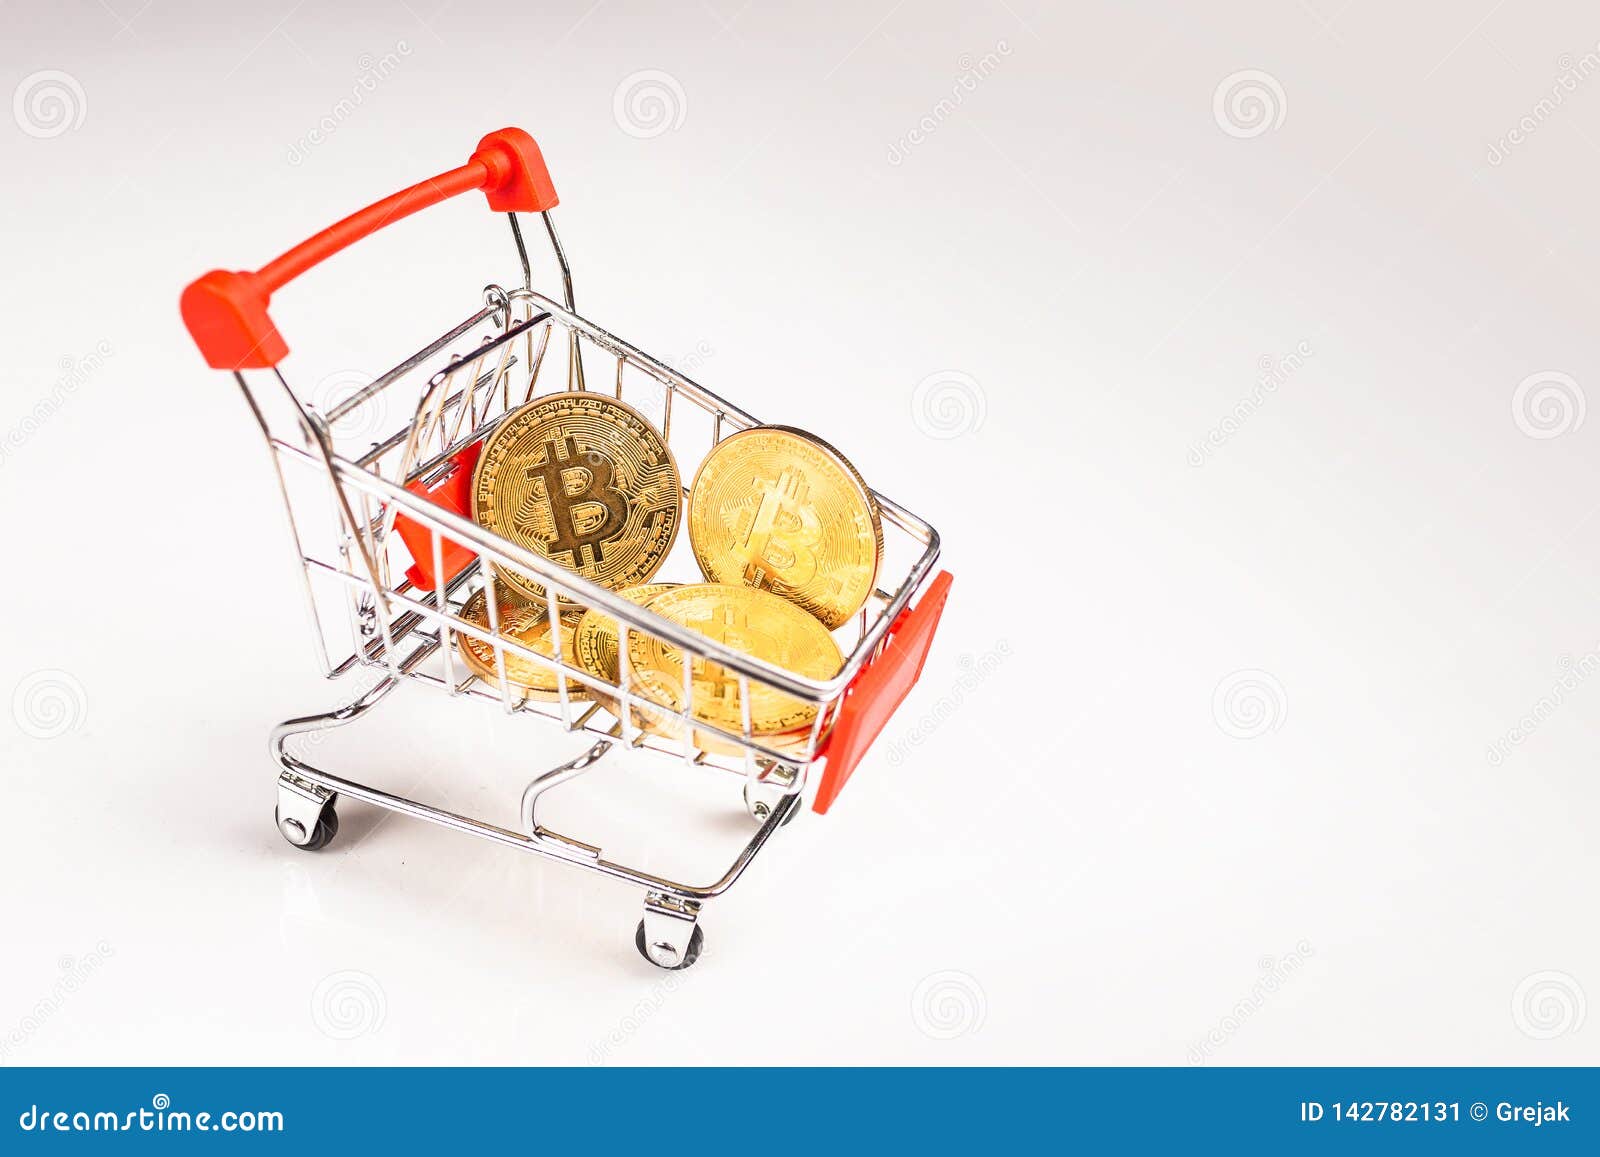 bitcoin shopping utile bitcoin confidential